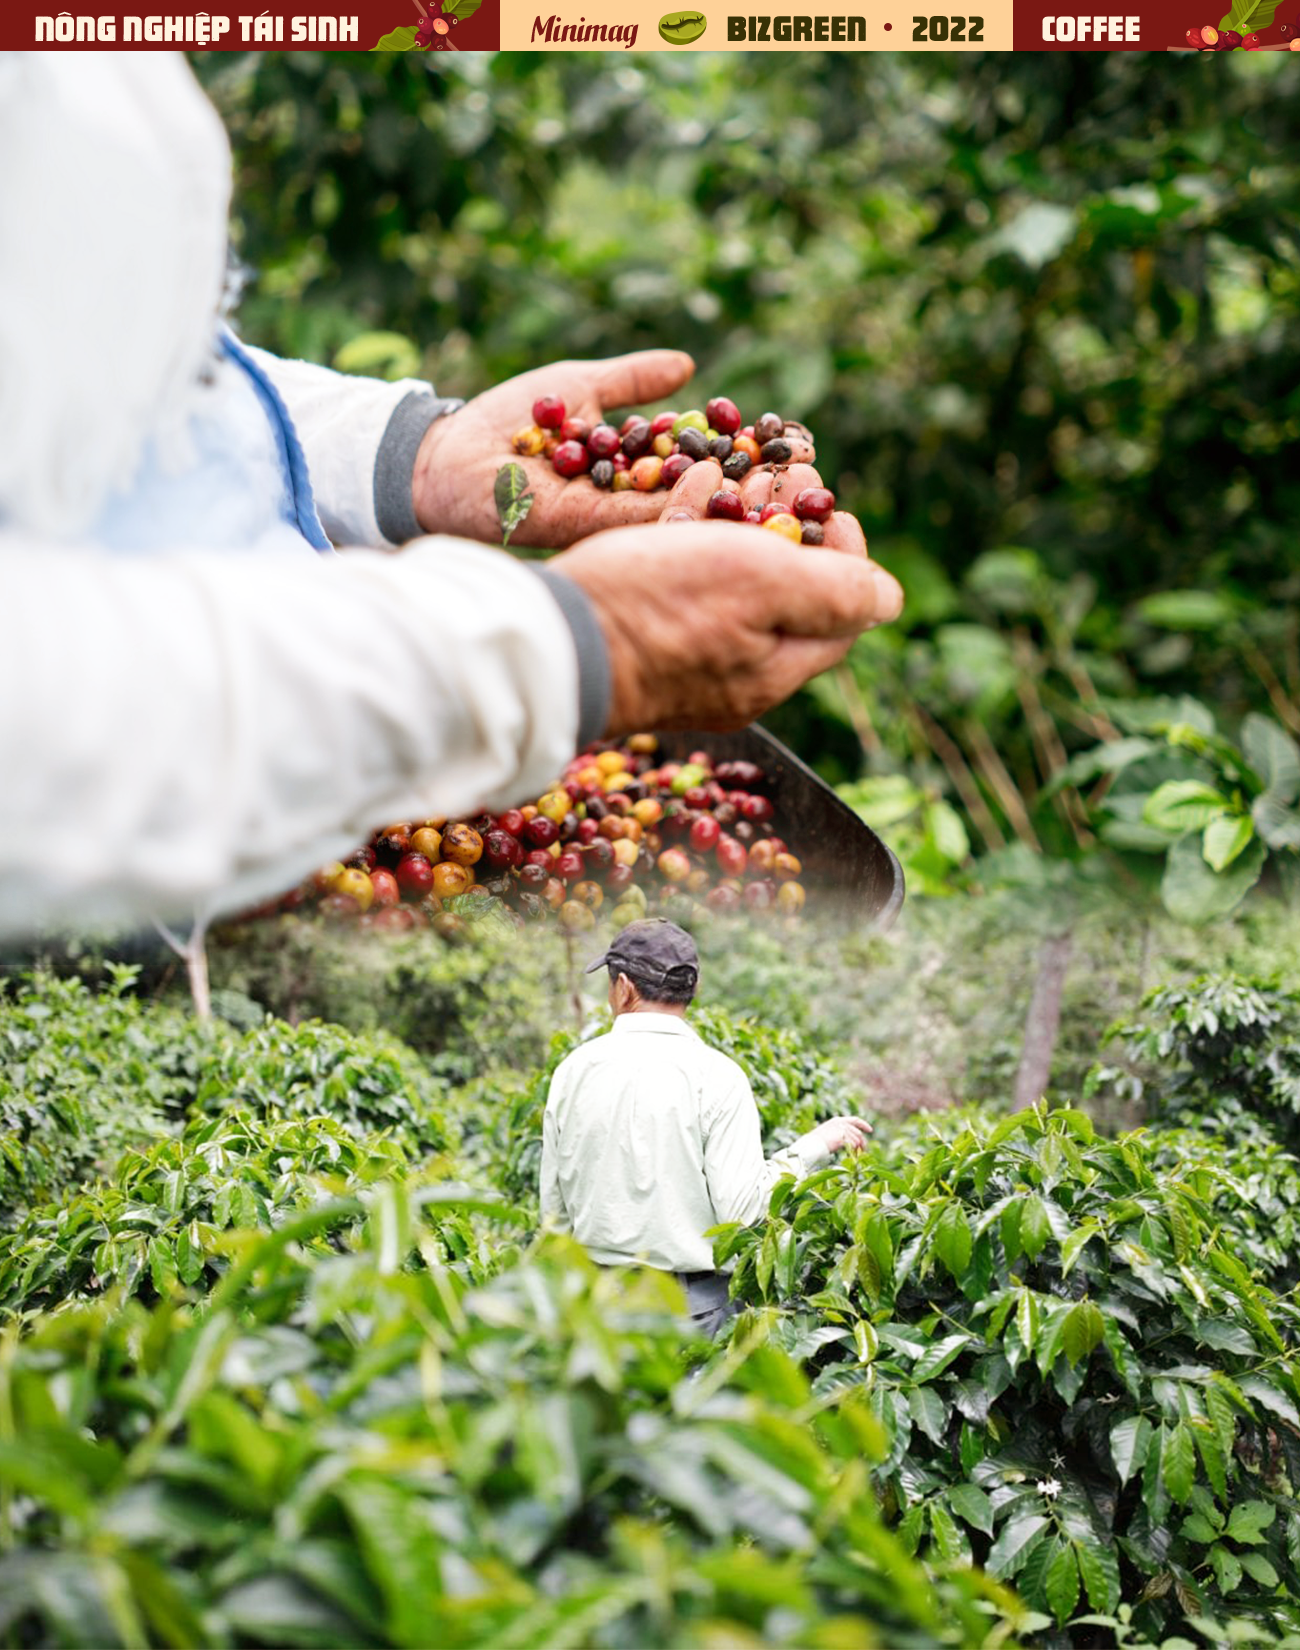 Với khung hình thiên nhiên tuyệt đẹp của đất nước, người đàn ông trồng cà phê Việt Nam sẽ đưa bạn đến với những vùng đất đầy phong cảnh thiên nhiên hùng vỹ. Khi thưởng thức những hạt cà phê thơm ngon và đậm đà, bạn sẽ cảm nhận được tình yêu và đam mê dành cho nghề trồng cà phê Việt Nam.